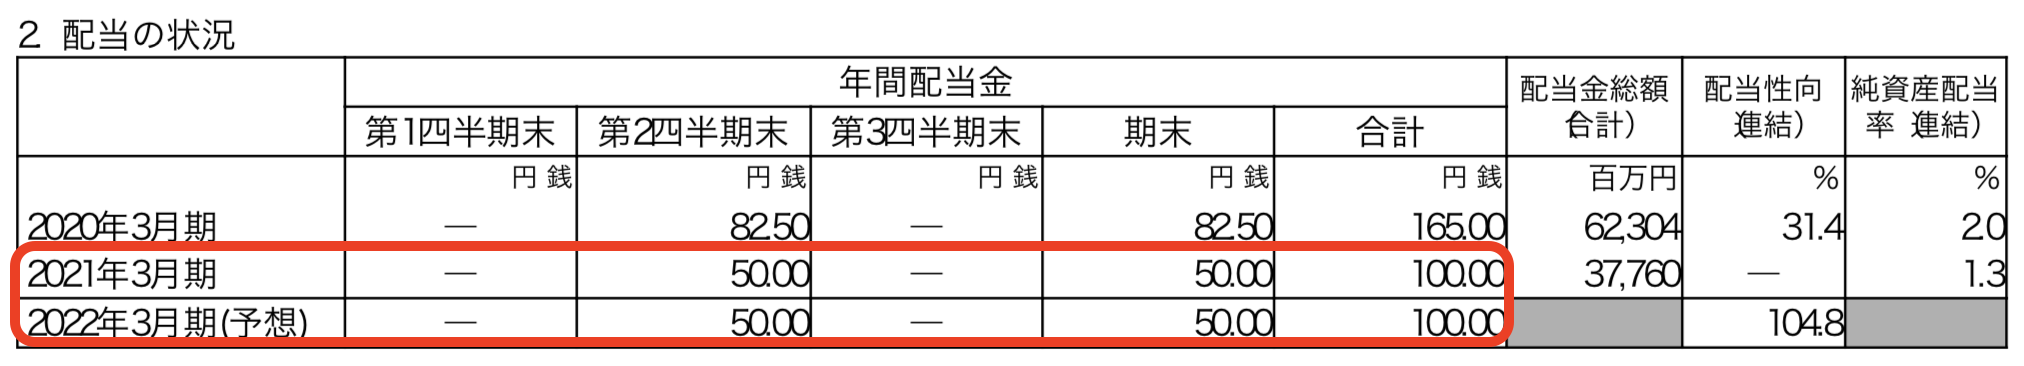 東日本旅客鉄道株式会社 2021年3月期 決算説明会